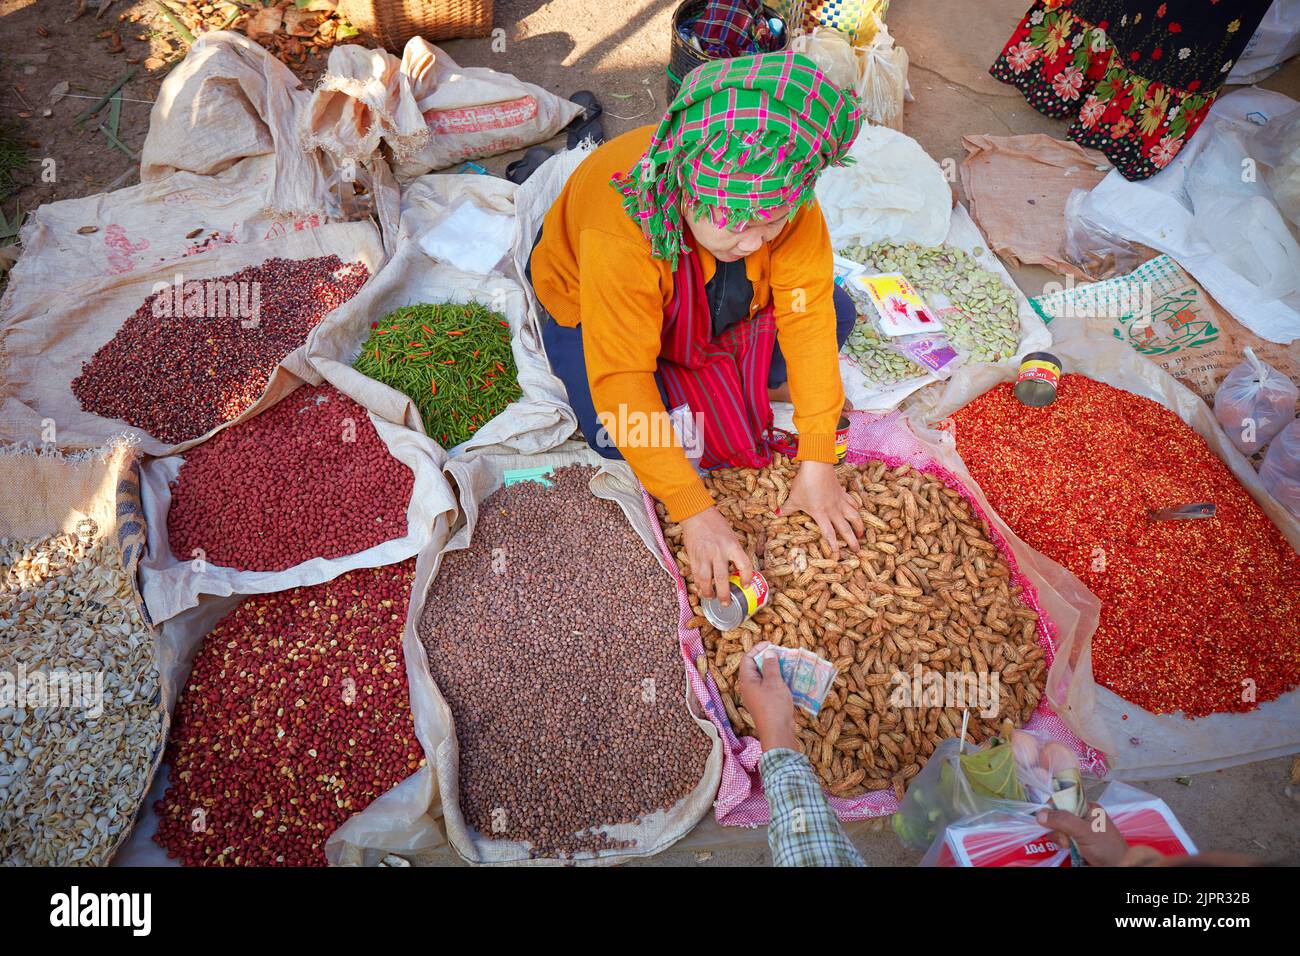 Birmano locale che vende spezie e frutta secca in uno stand presso il Phaung Daw OO Market, Inle Lake, Myanmar. Foto Stock